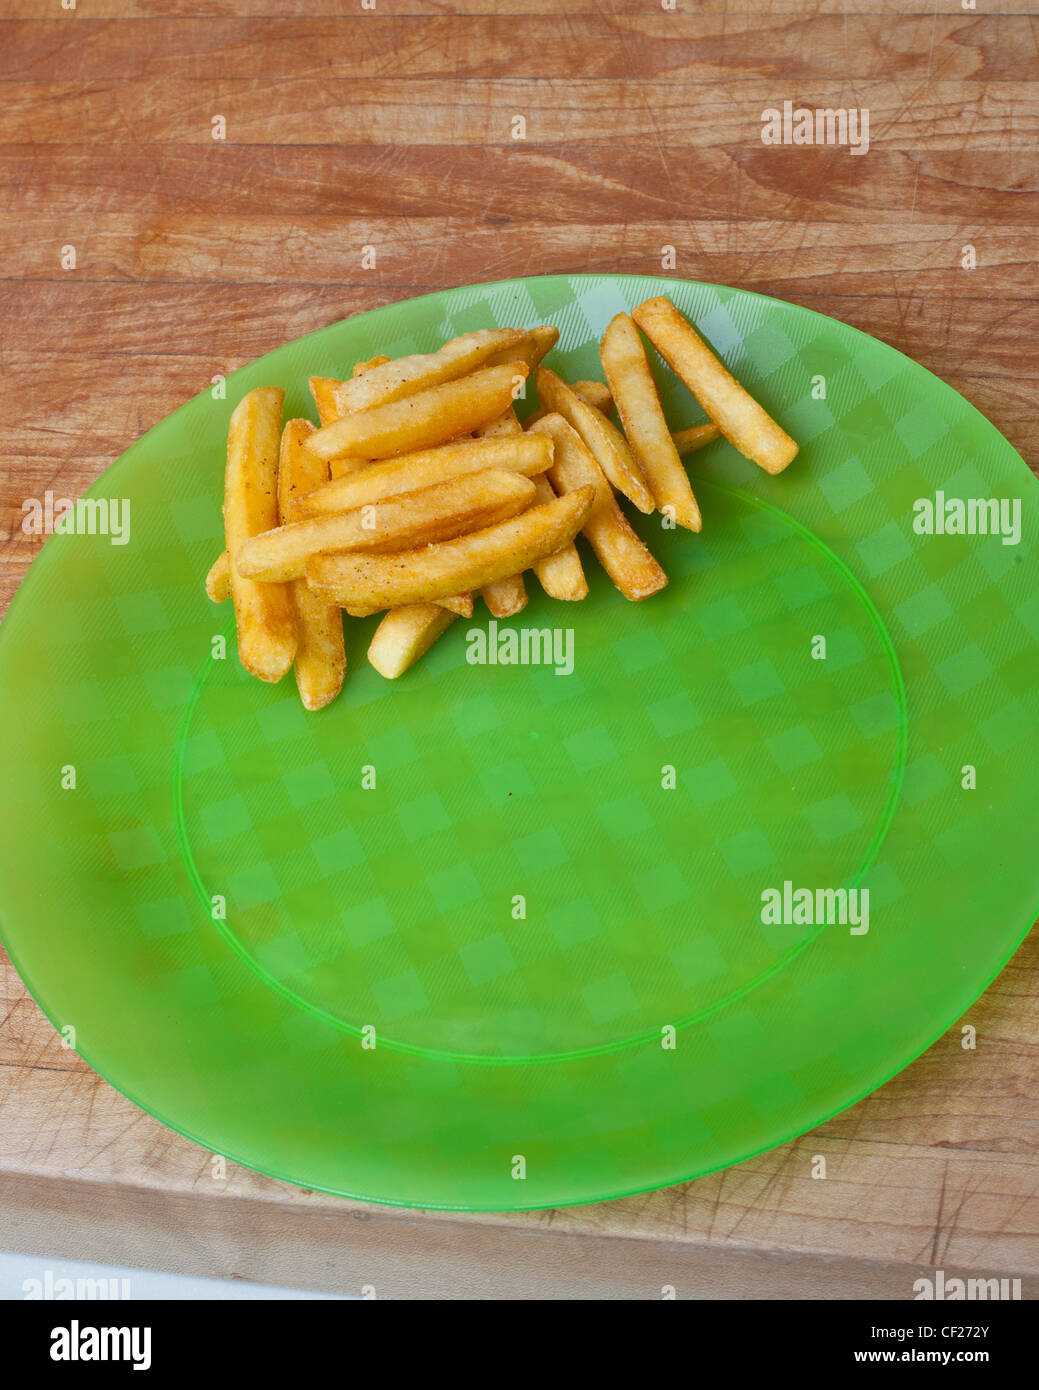 Nuggets de poulet et frites sur la vaisselle en plastique Banque D'Images